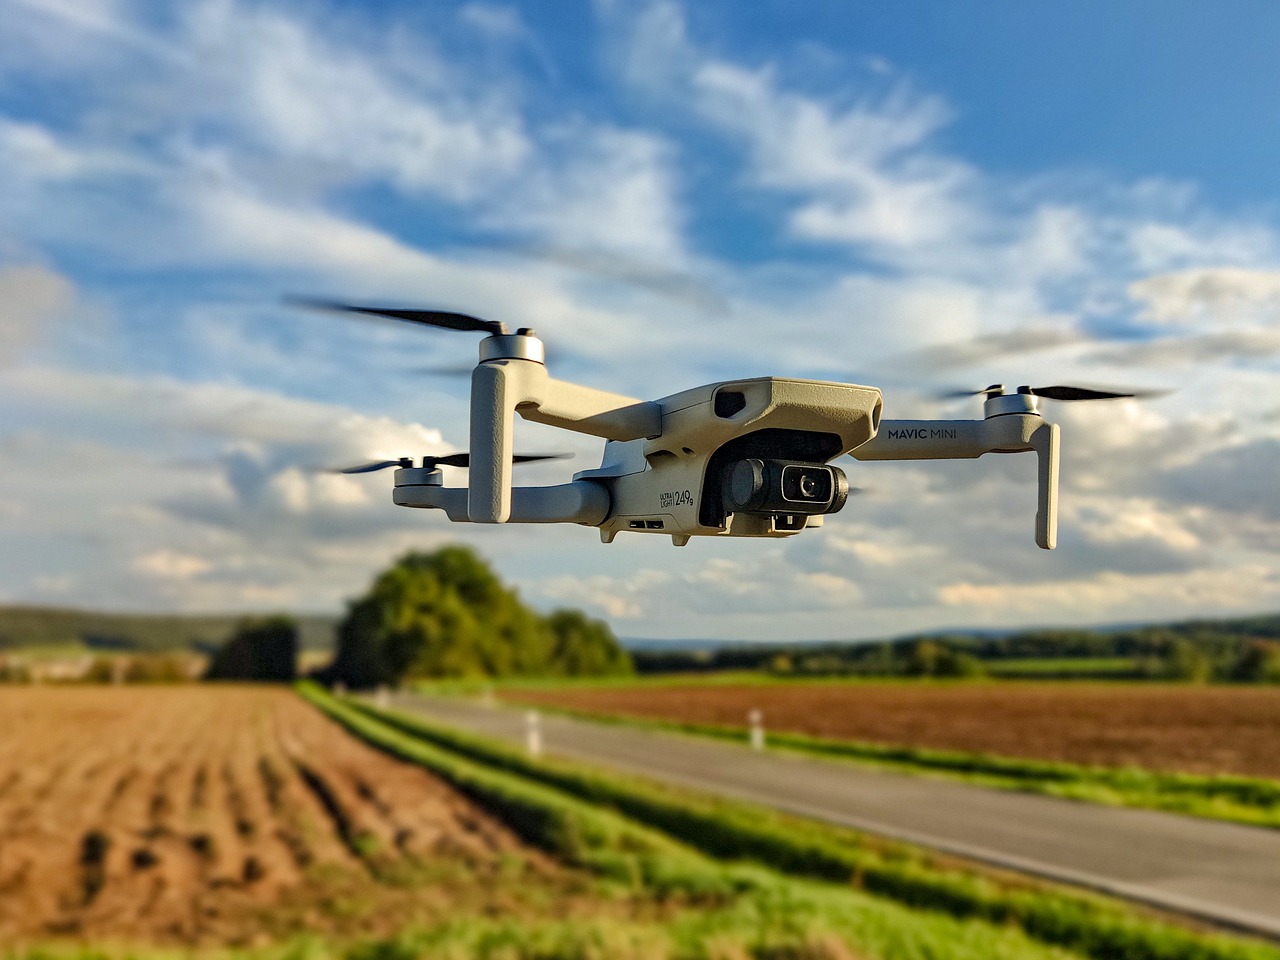 Βασίλης Κικίλιας: Νέα, υπερσύγχρονα drones πετούν μέρα- νύχτα στους ορεινούς όγκους της Αττικής για τον εντοπισμό πυρκαγιών αλλά και εμπρηστών – 147.000 δηλώσεις για καθαρισμούς οικοπέδων στην πλατφόρμα